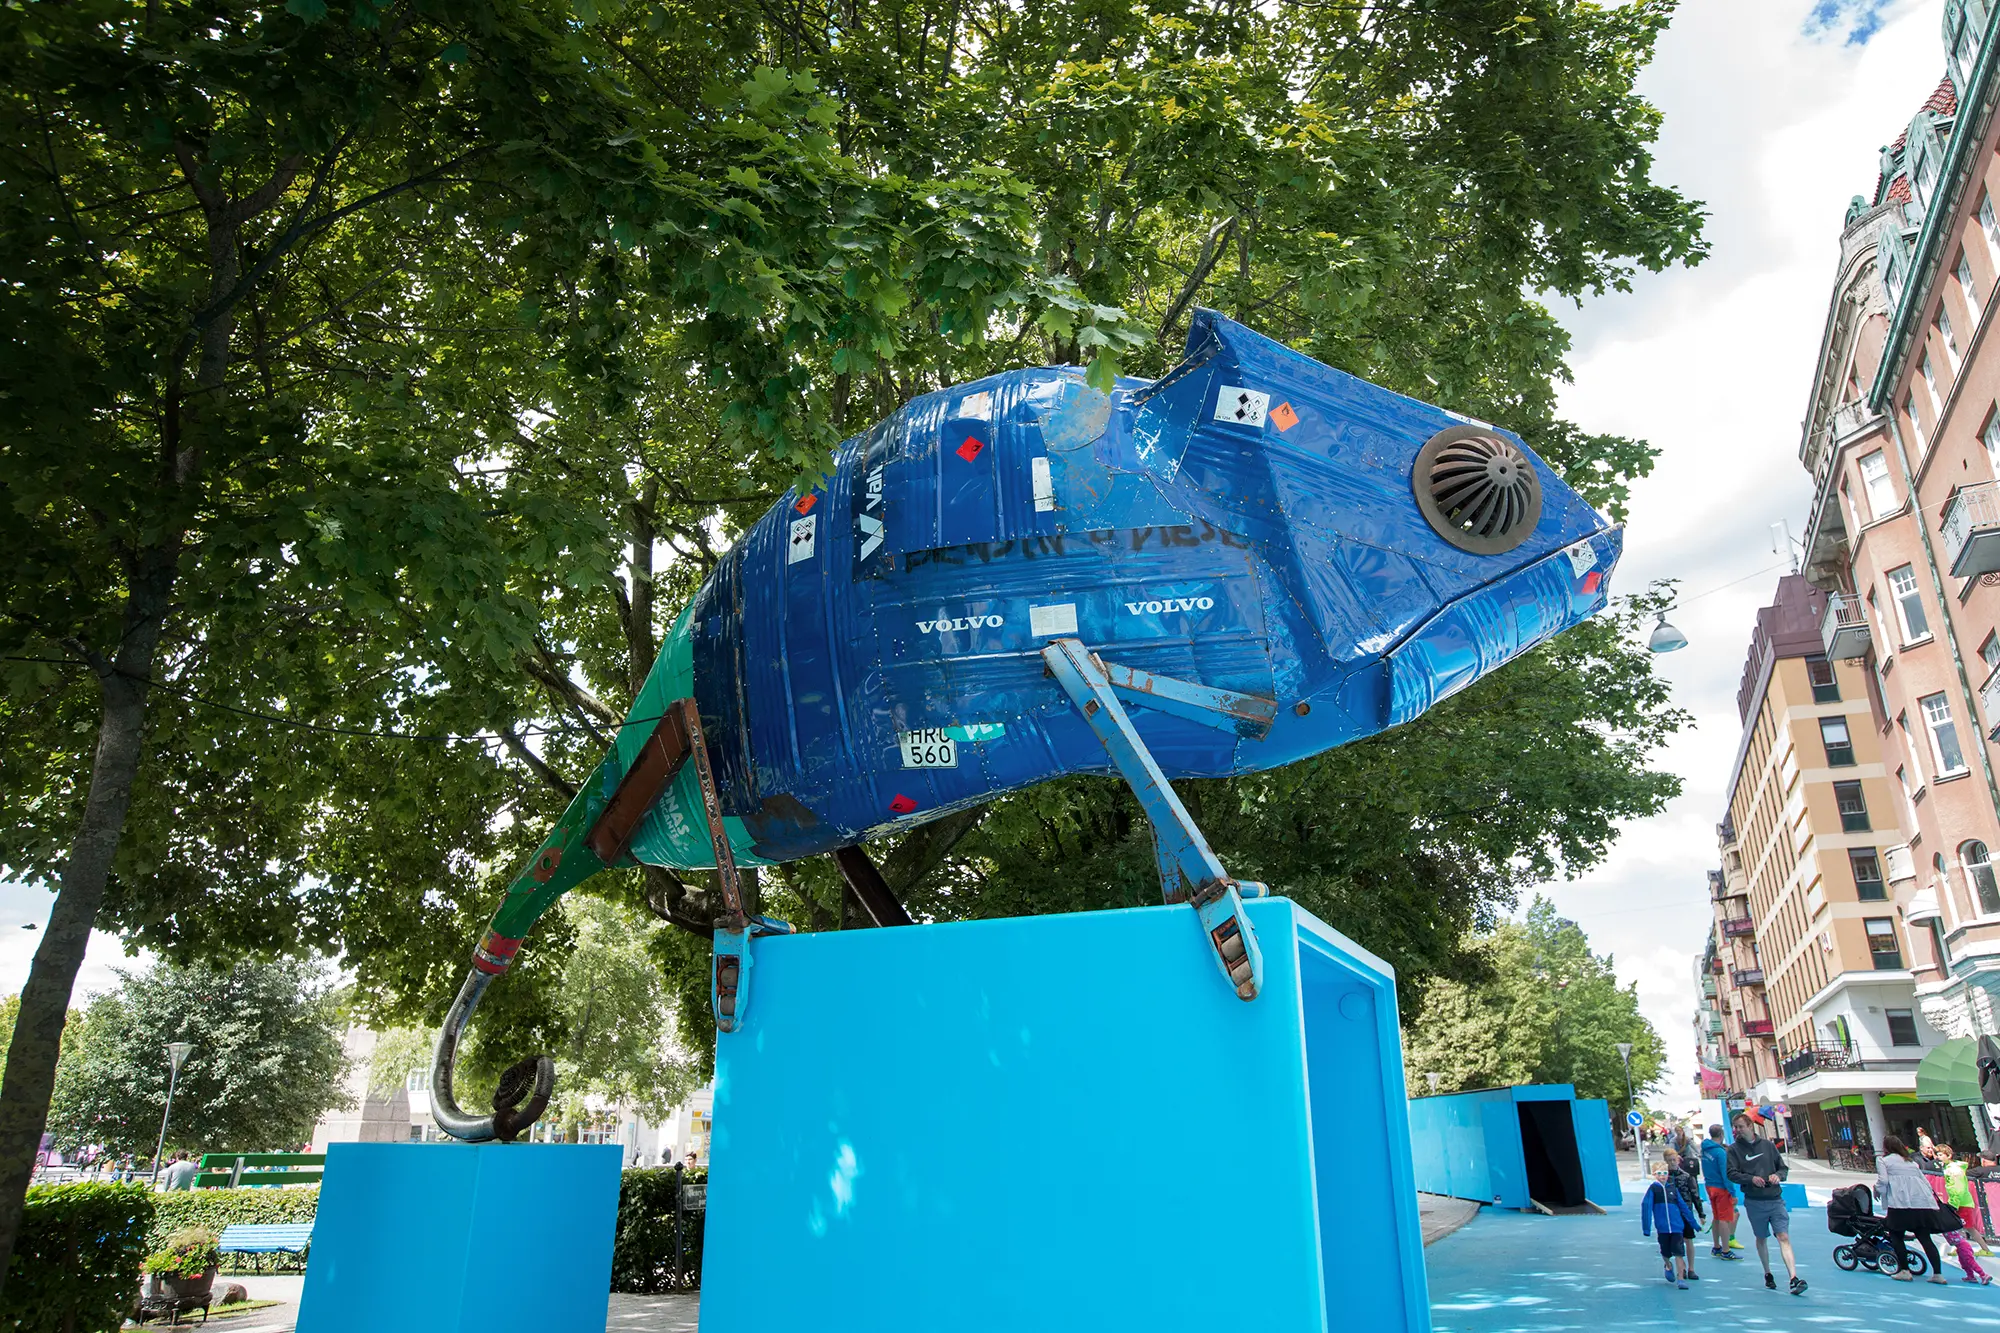 Utomhus uppe på en ljusblå plattform är en stor blå skulptur i metall i formen av en kameleont placerad. Den är uppbyggd av böjda plåtbitar som som sitter nitade som ett lapptäcke. På några av bitarna syns text och symboler, bland annat "VOLVO" och en registreringsskylt